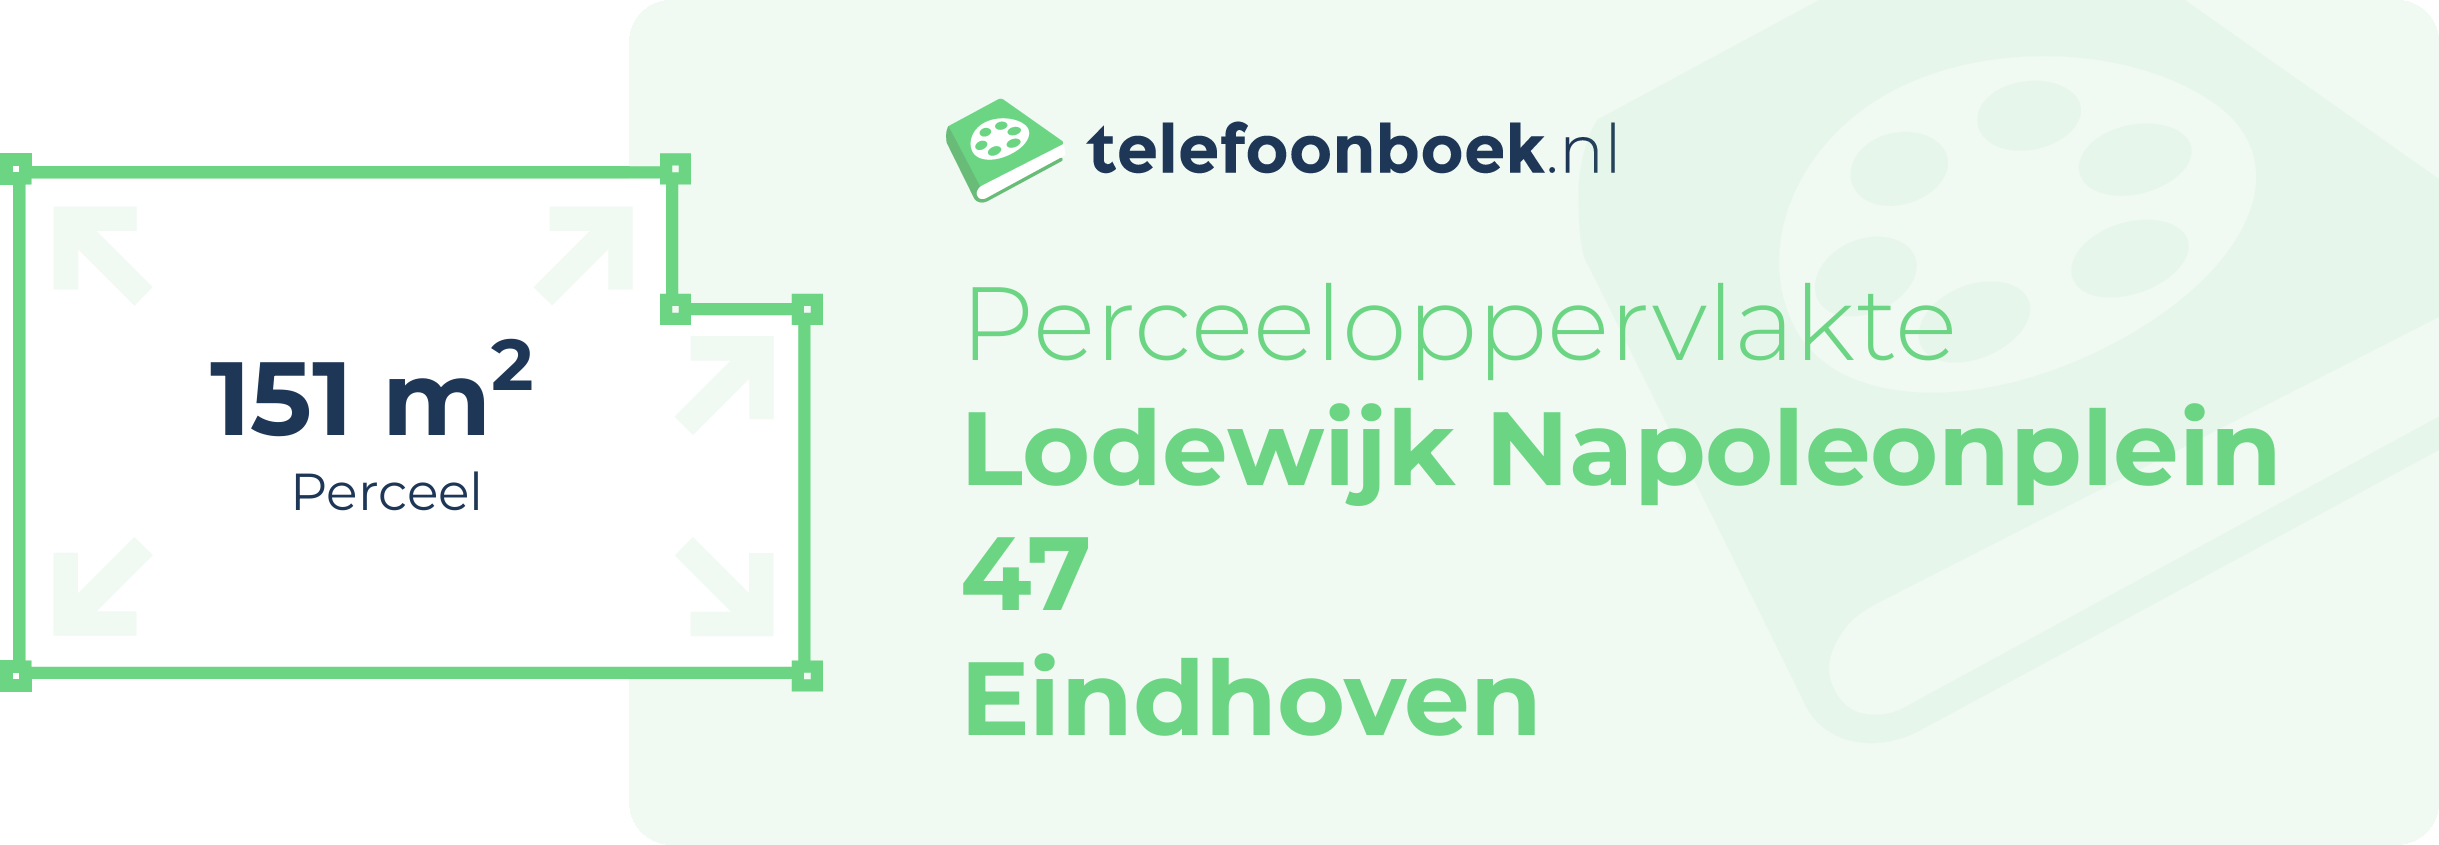 Perceeloppervlakte Lodewijk Napoleonplein 47 Eindhoven